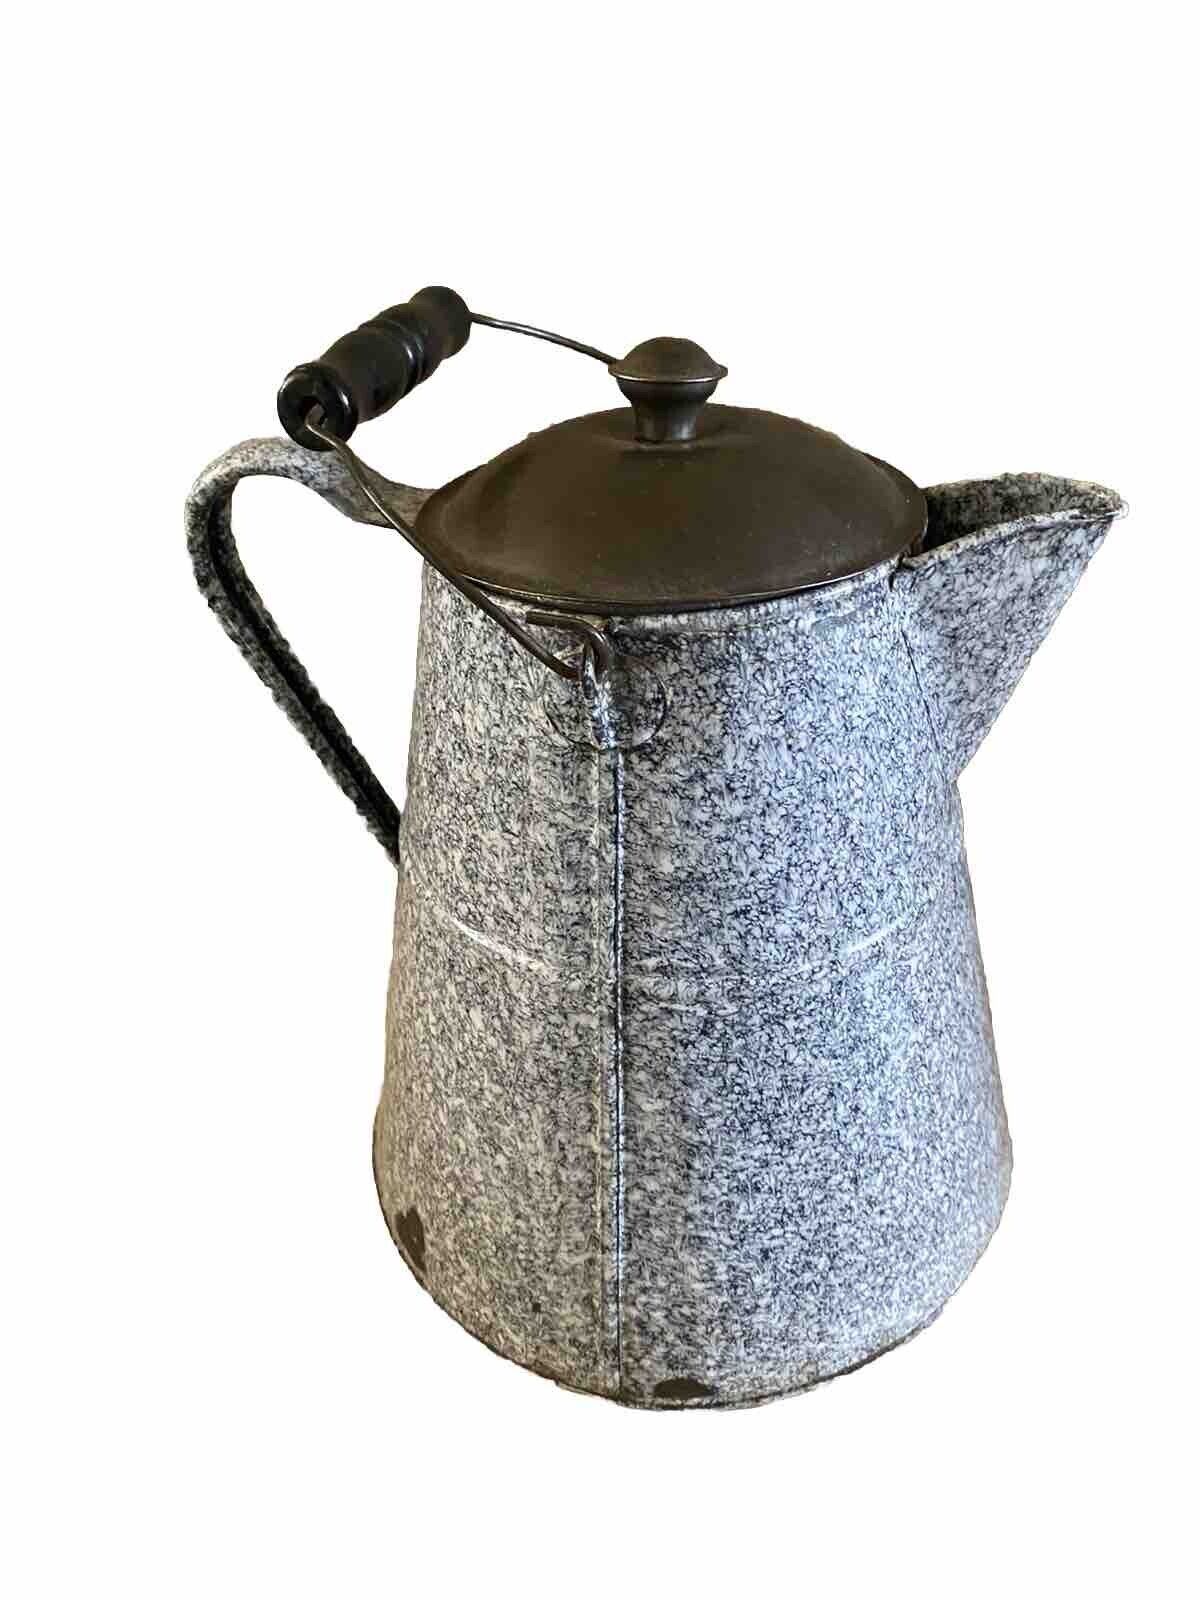 Large Vintage Enamelware Graniteware Coffee Pot Cowboy Camp Kettle Rustic